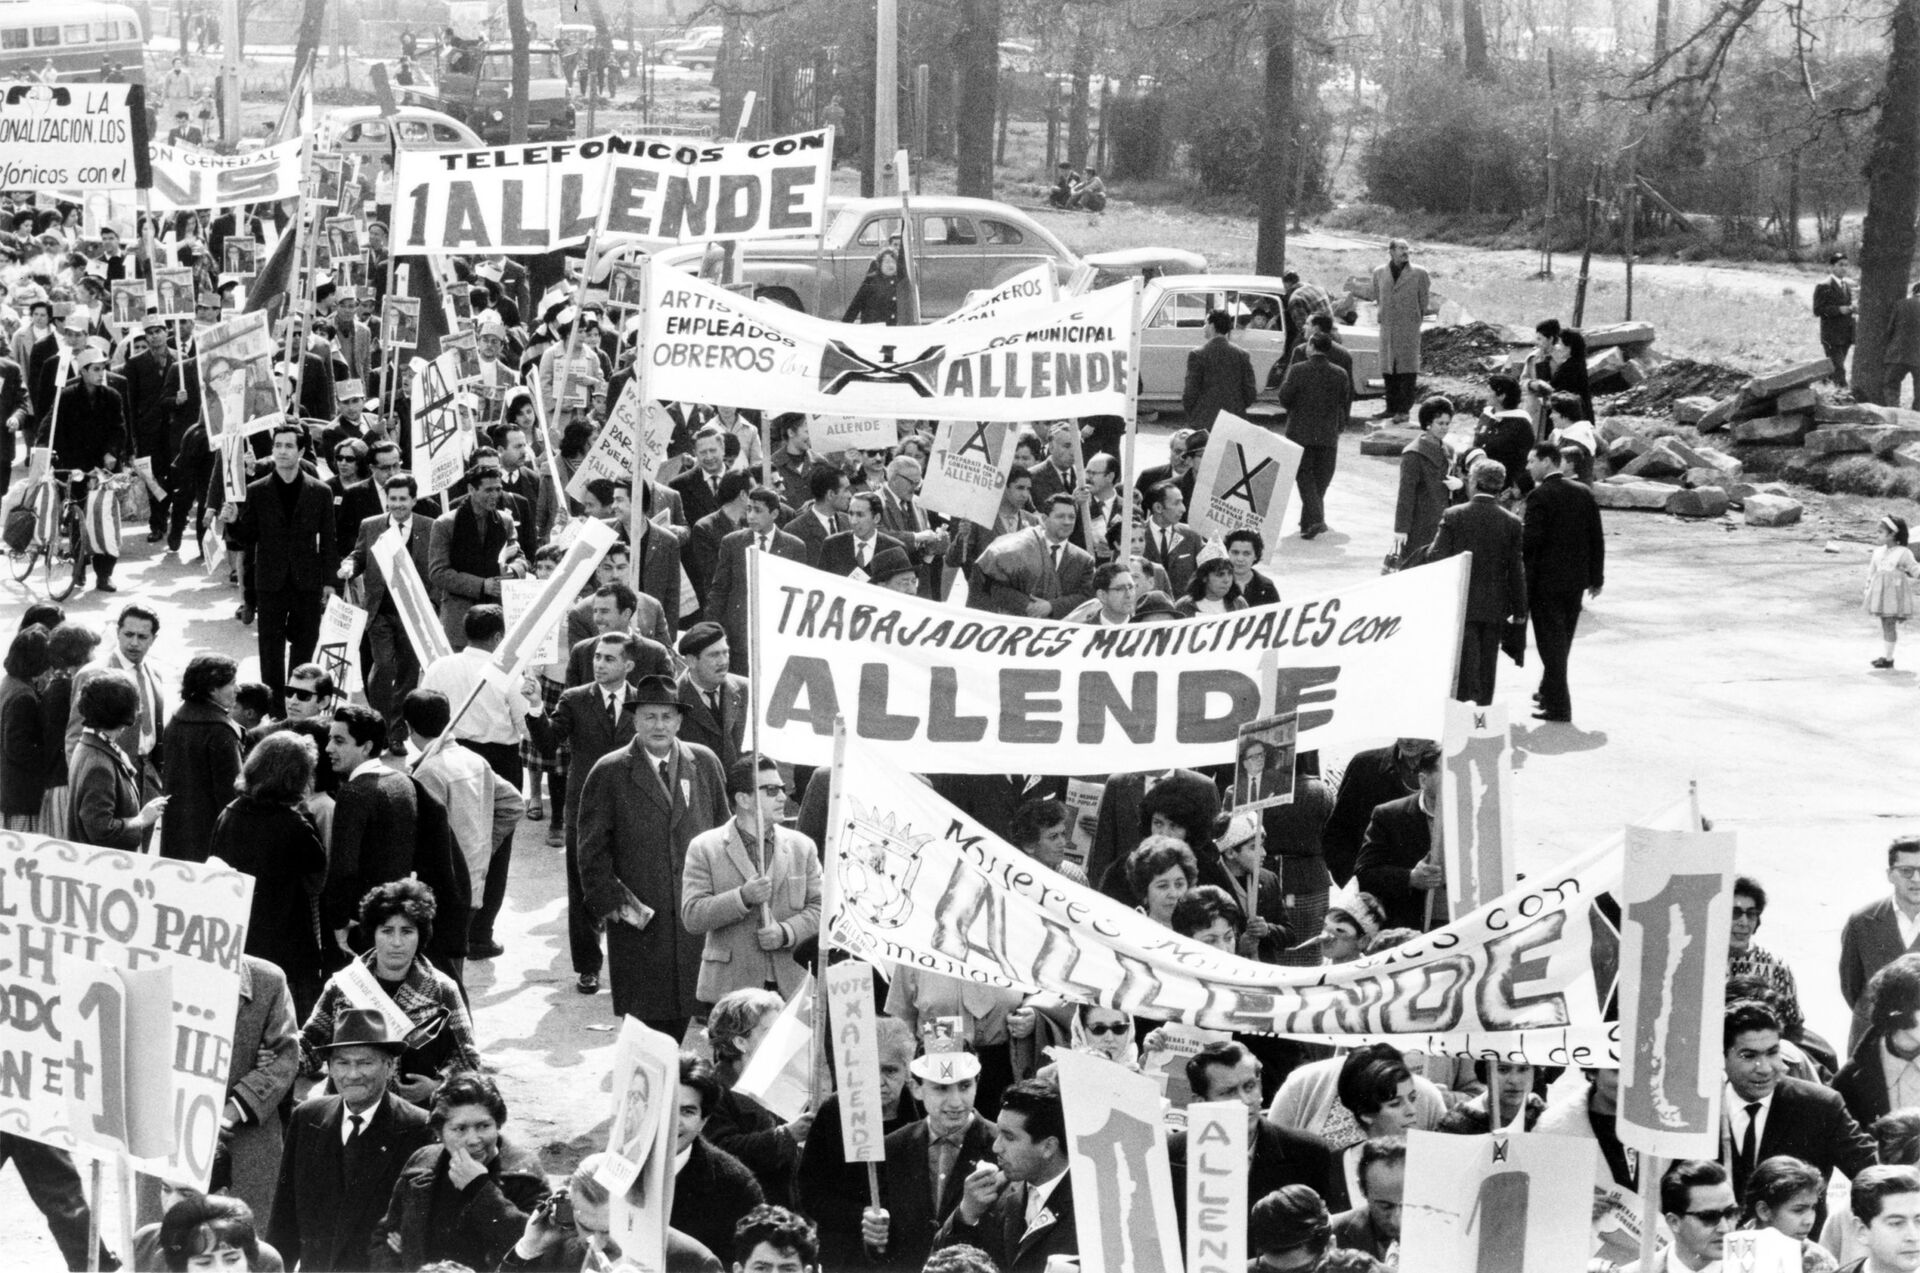 CIA mostra Brasil cúmplice dos EUA na derrubada de Allende: 'Foram grandes aliados', diz pesquisador - Sputnik Brasil, 1920, 02.04.2021